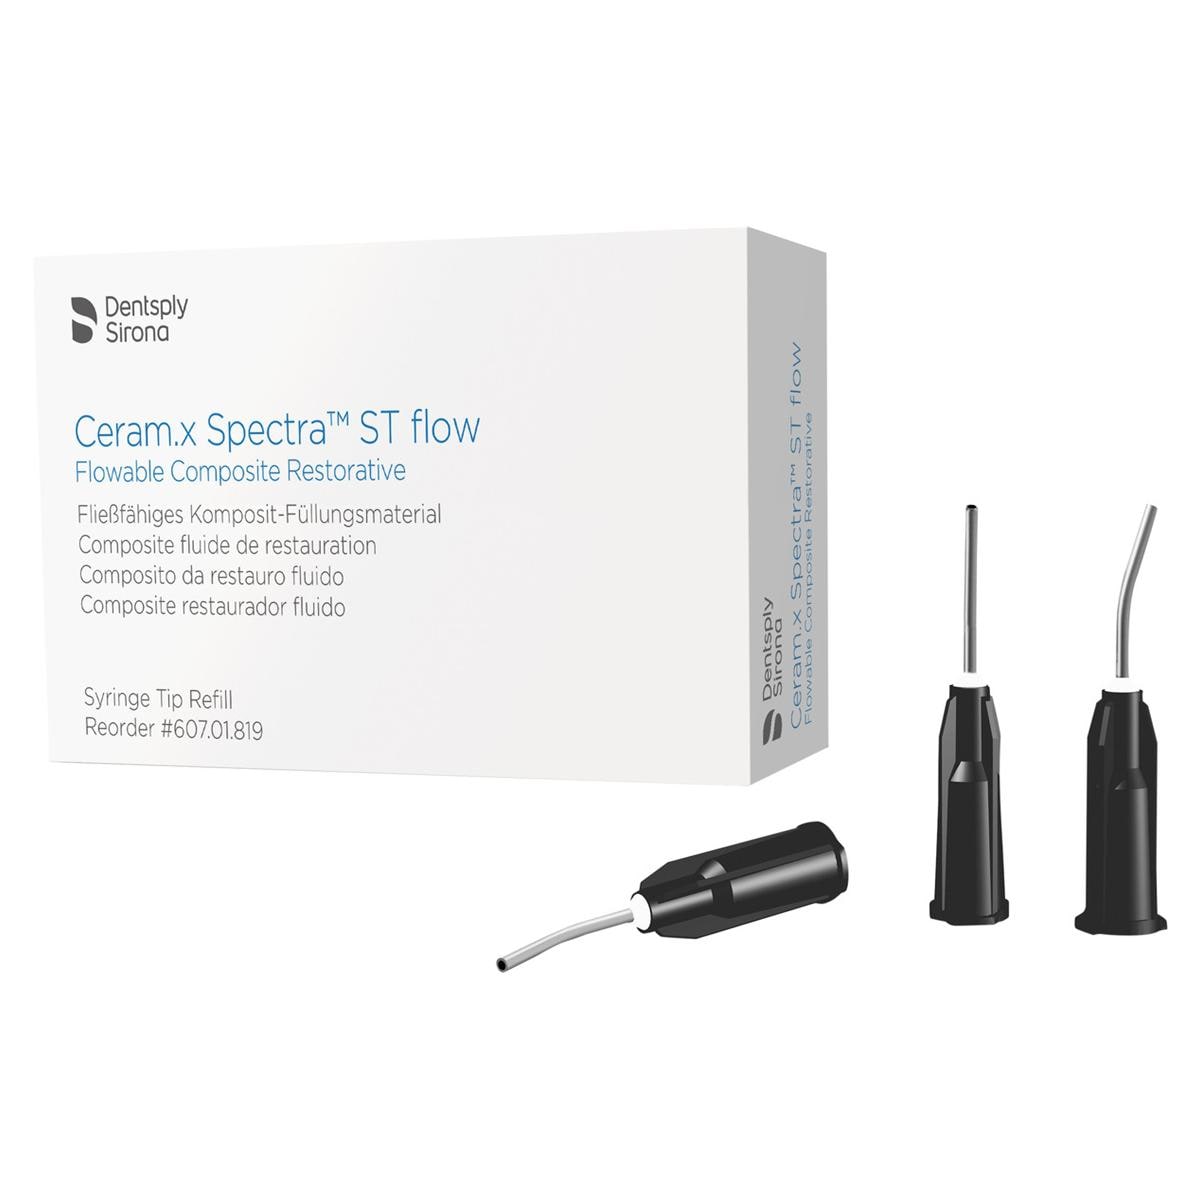 Ceram.x Spectra ST flow, embouts d'application - Emballage, 50 pcs